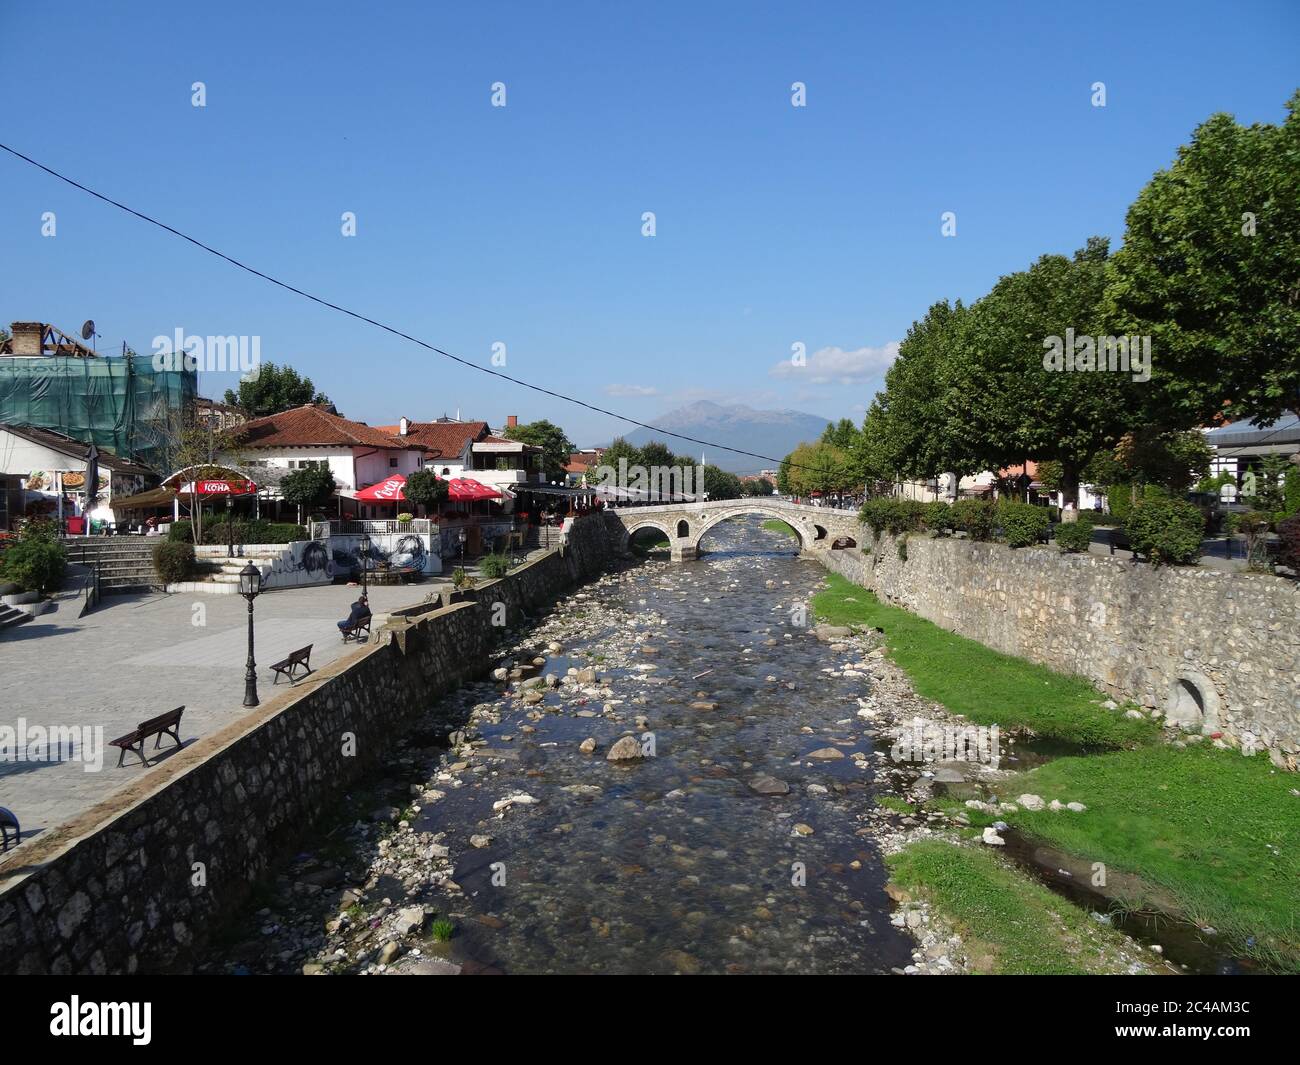 Schöne Panoramen von Prispen und Spaziergänge in der Stadt. Ein ungewöhnlicher Ort, der nach Konflikten im Kosovo seinen Geschmack bewahrt hat Stockfoto